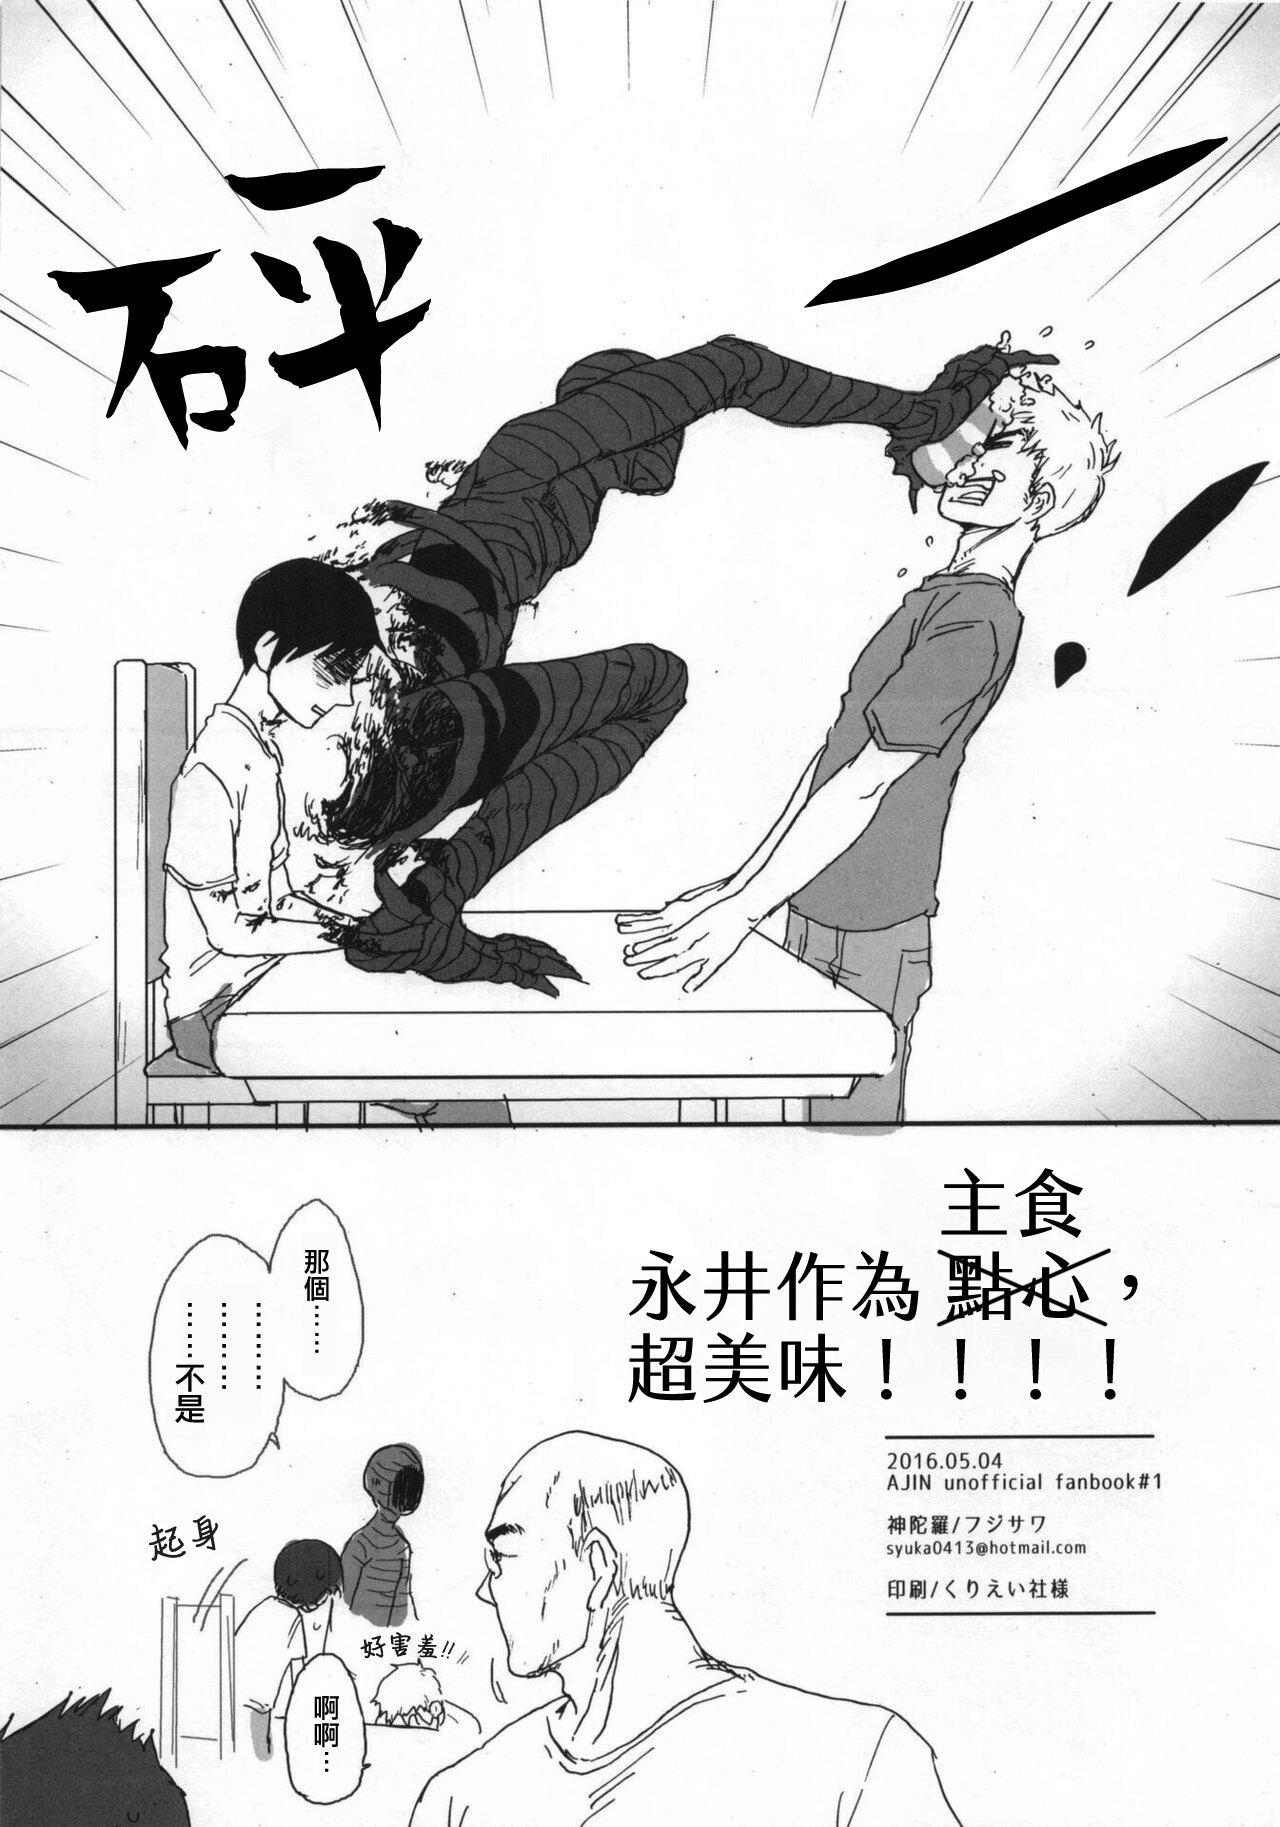 Porno Amateur Ajin 亜人 ( 今日だけ解禁） - Ajin Motel - Page 17